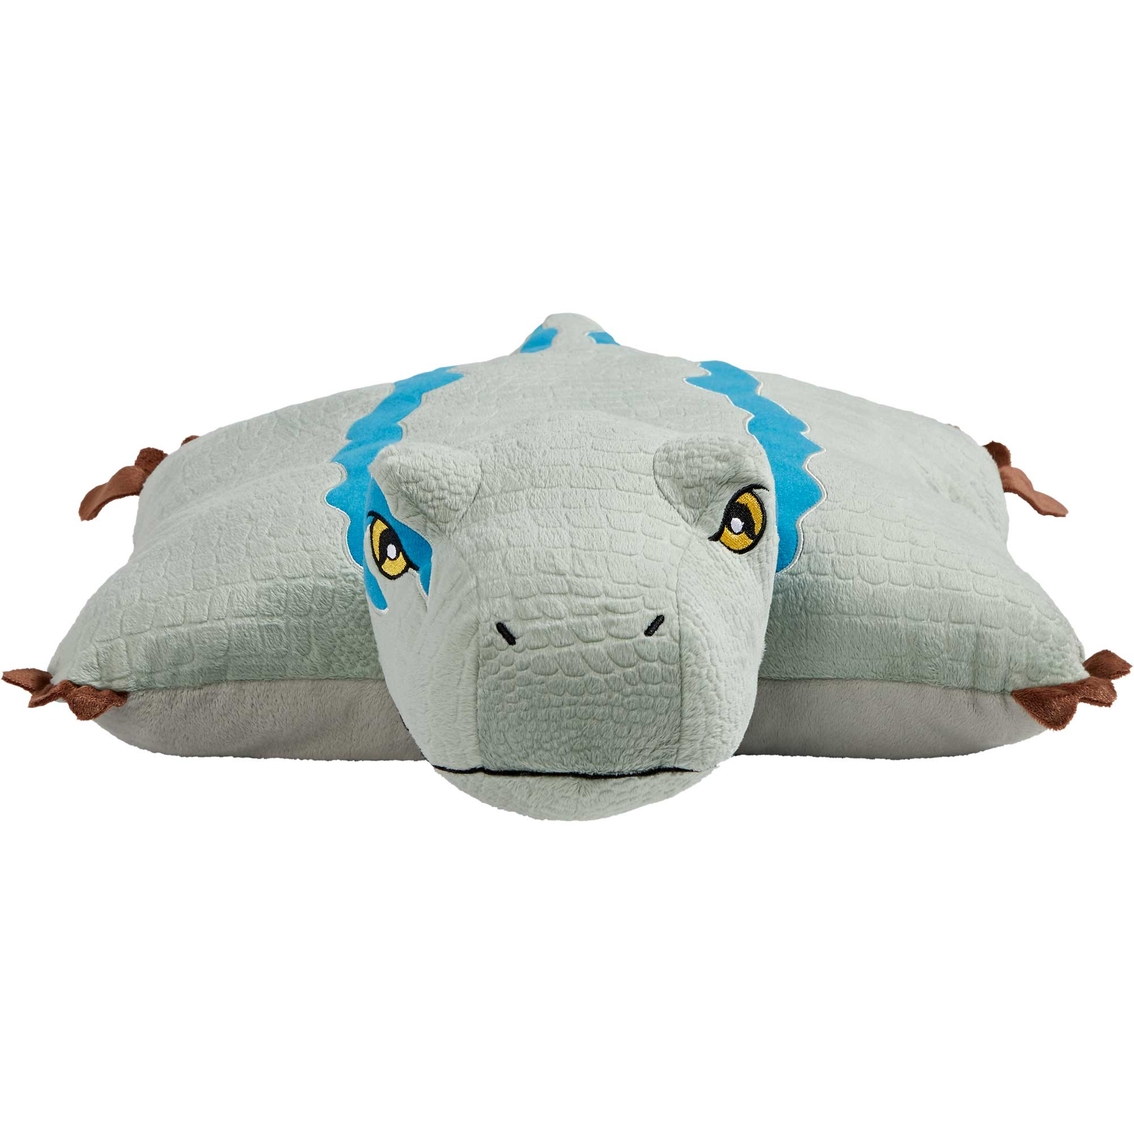 Pillow Pets NBC Universal Jurassic World Blue Stuffed Plush Toy - Image 2 of 3